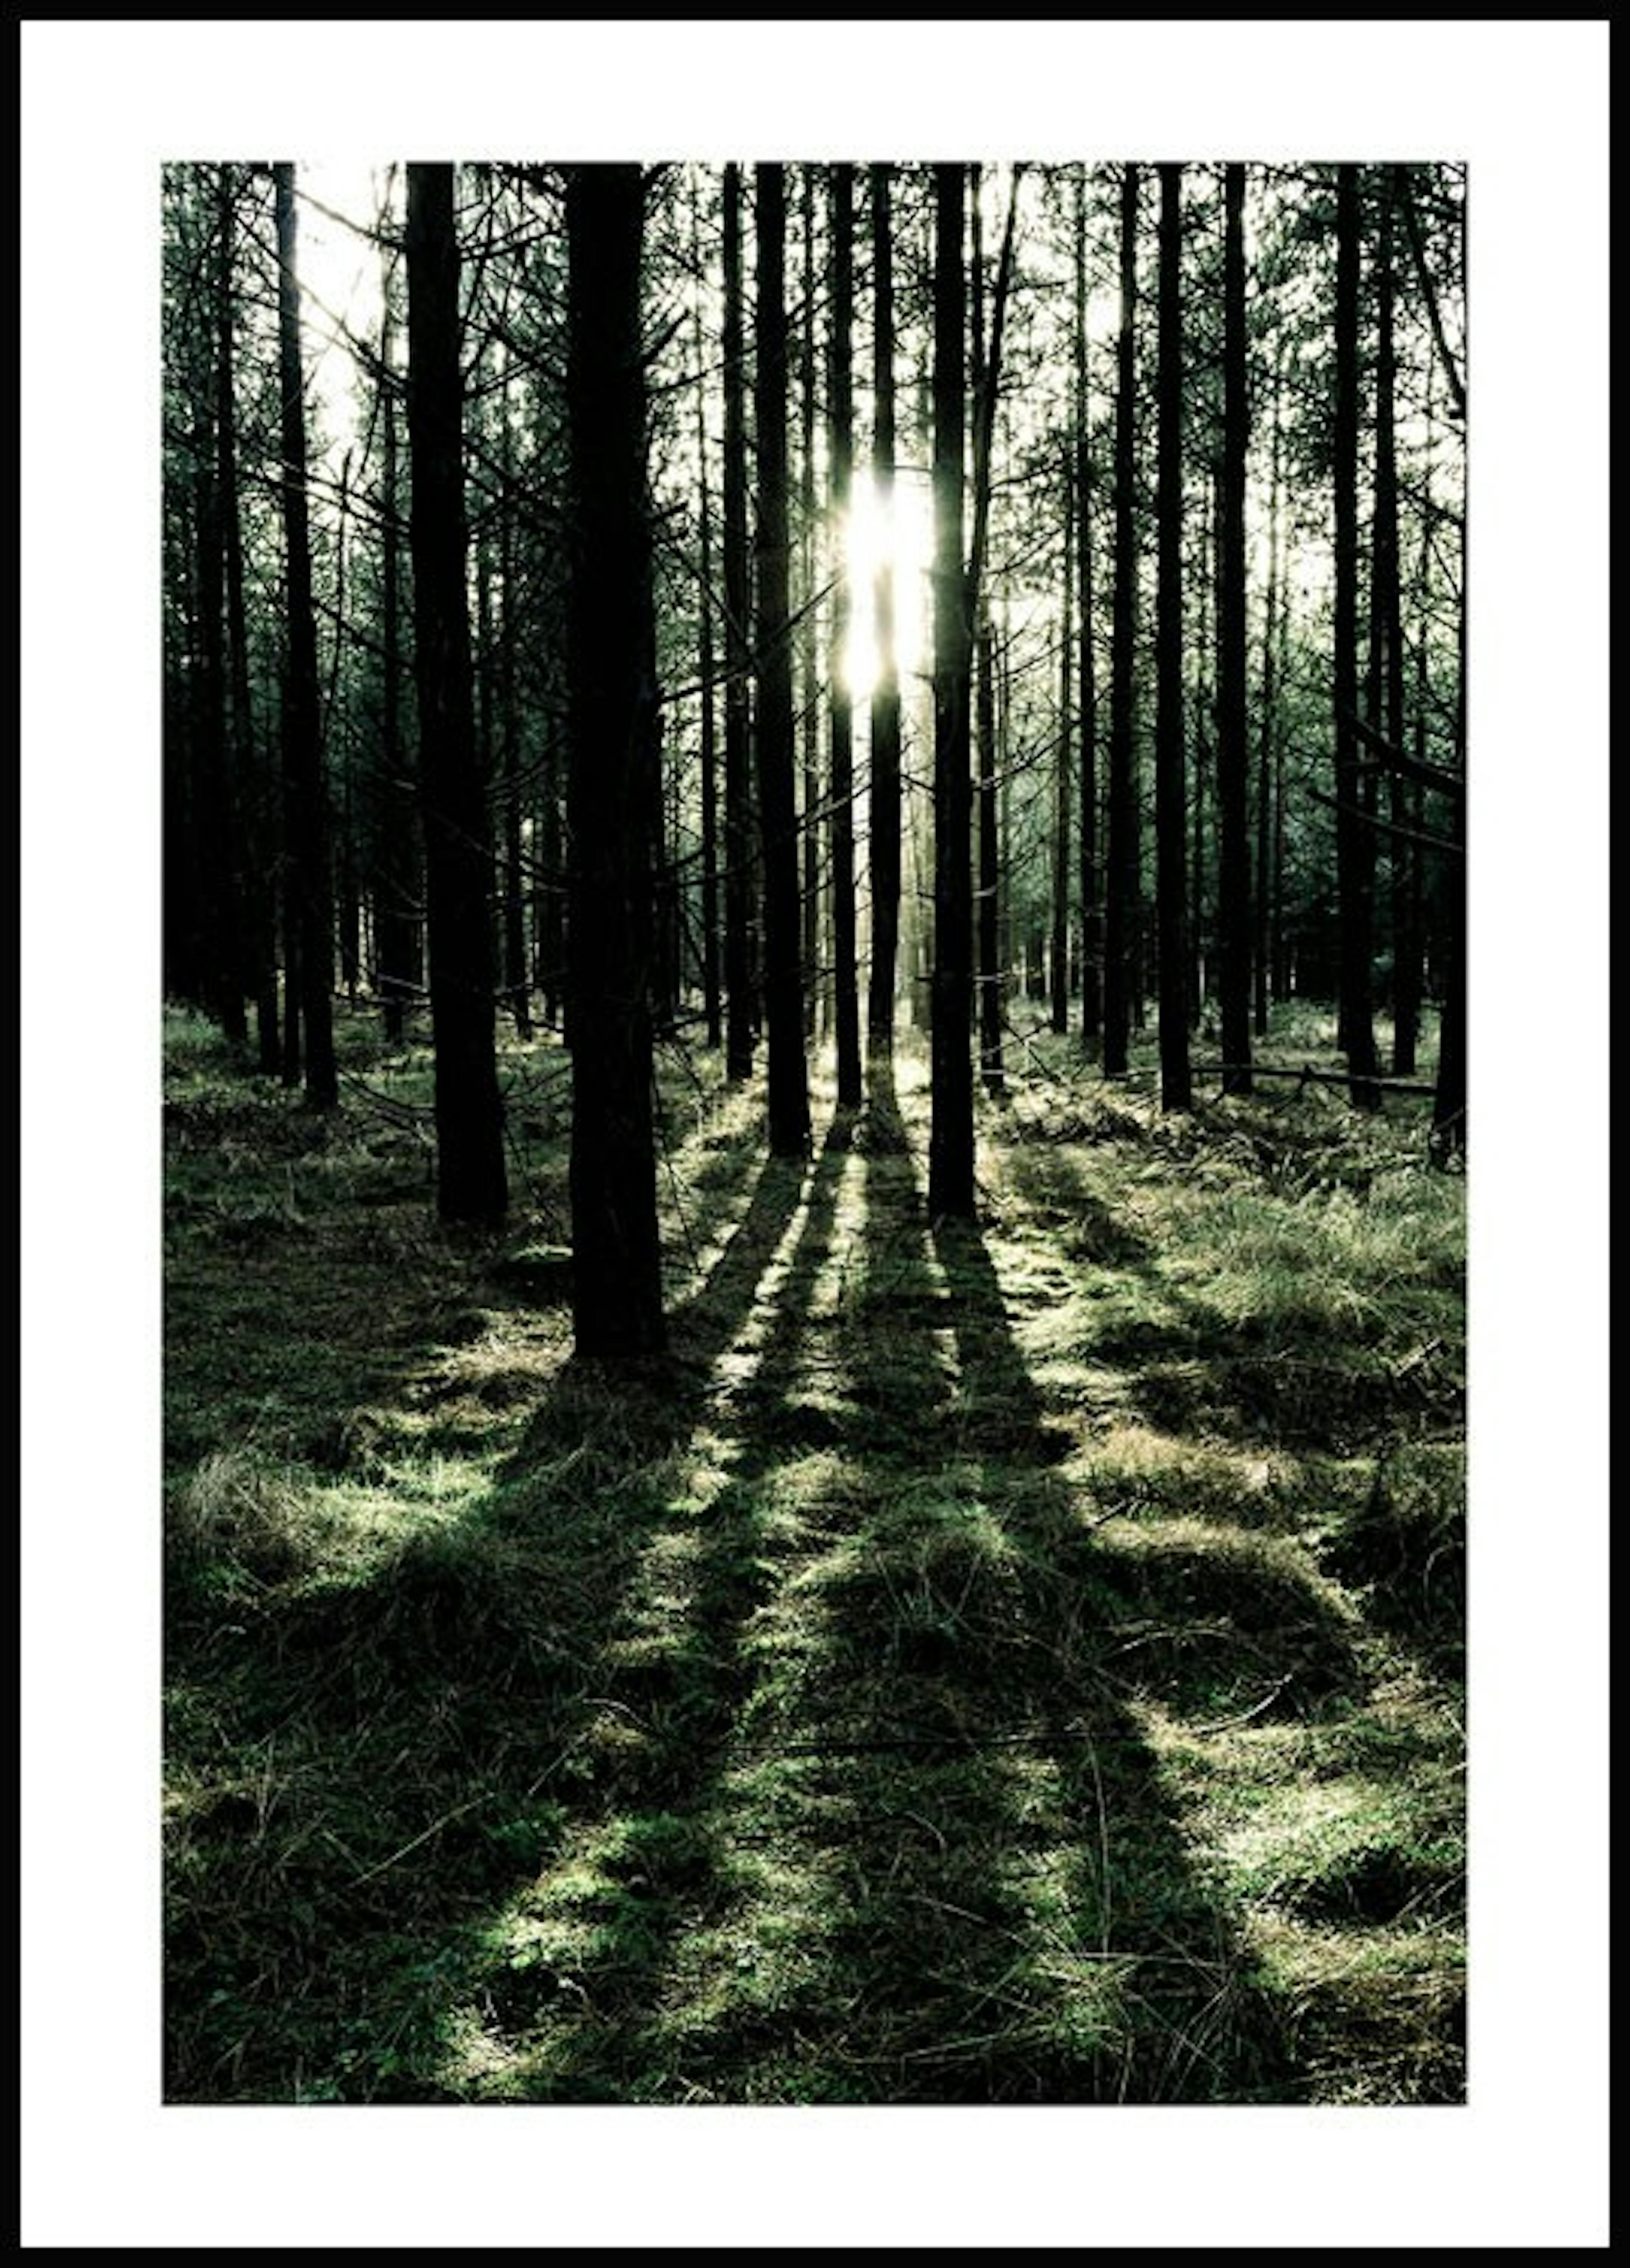 لوحة لصورة الغابة وأشعة الشمس 0